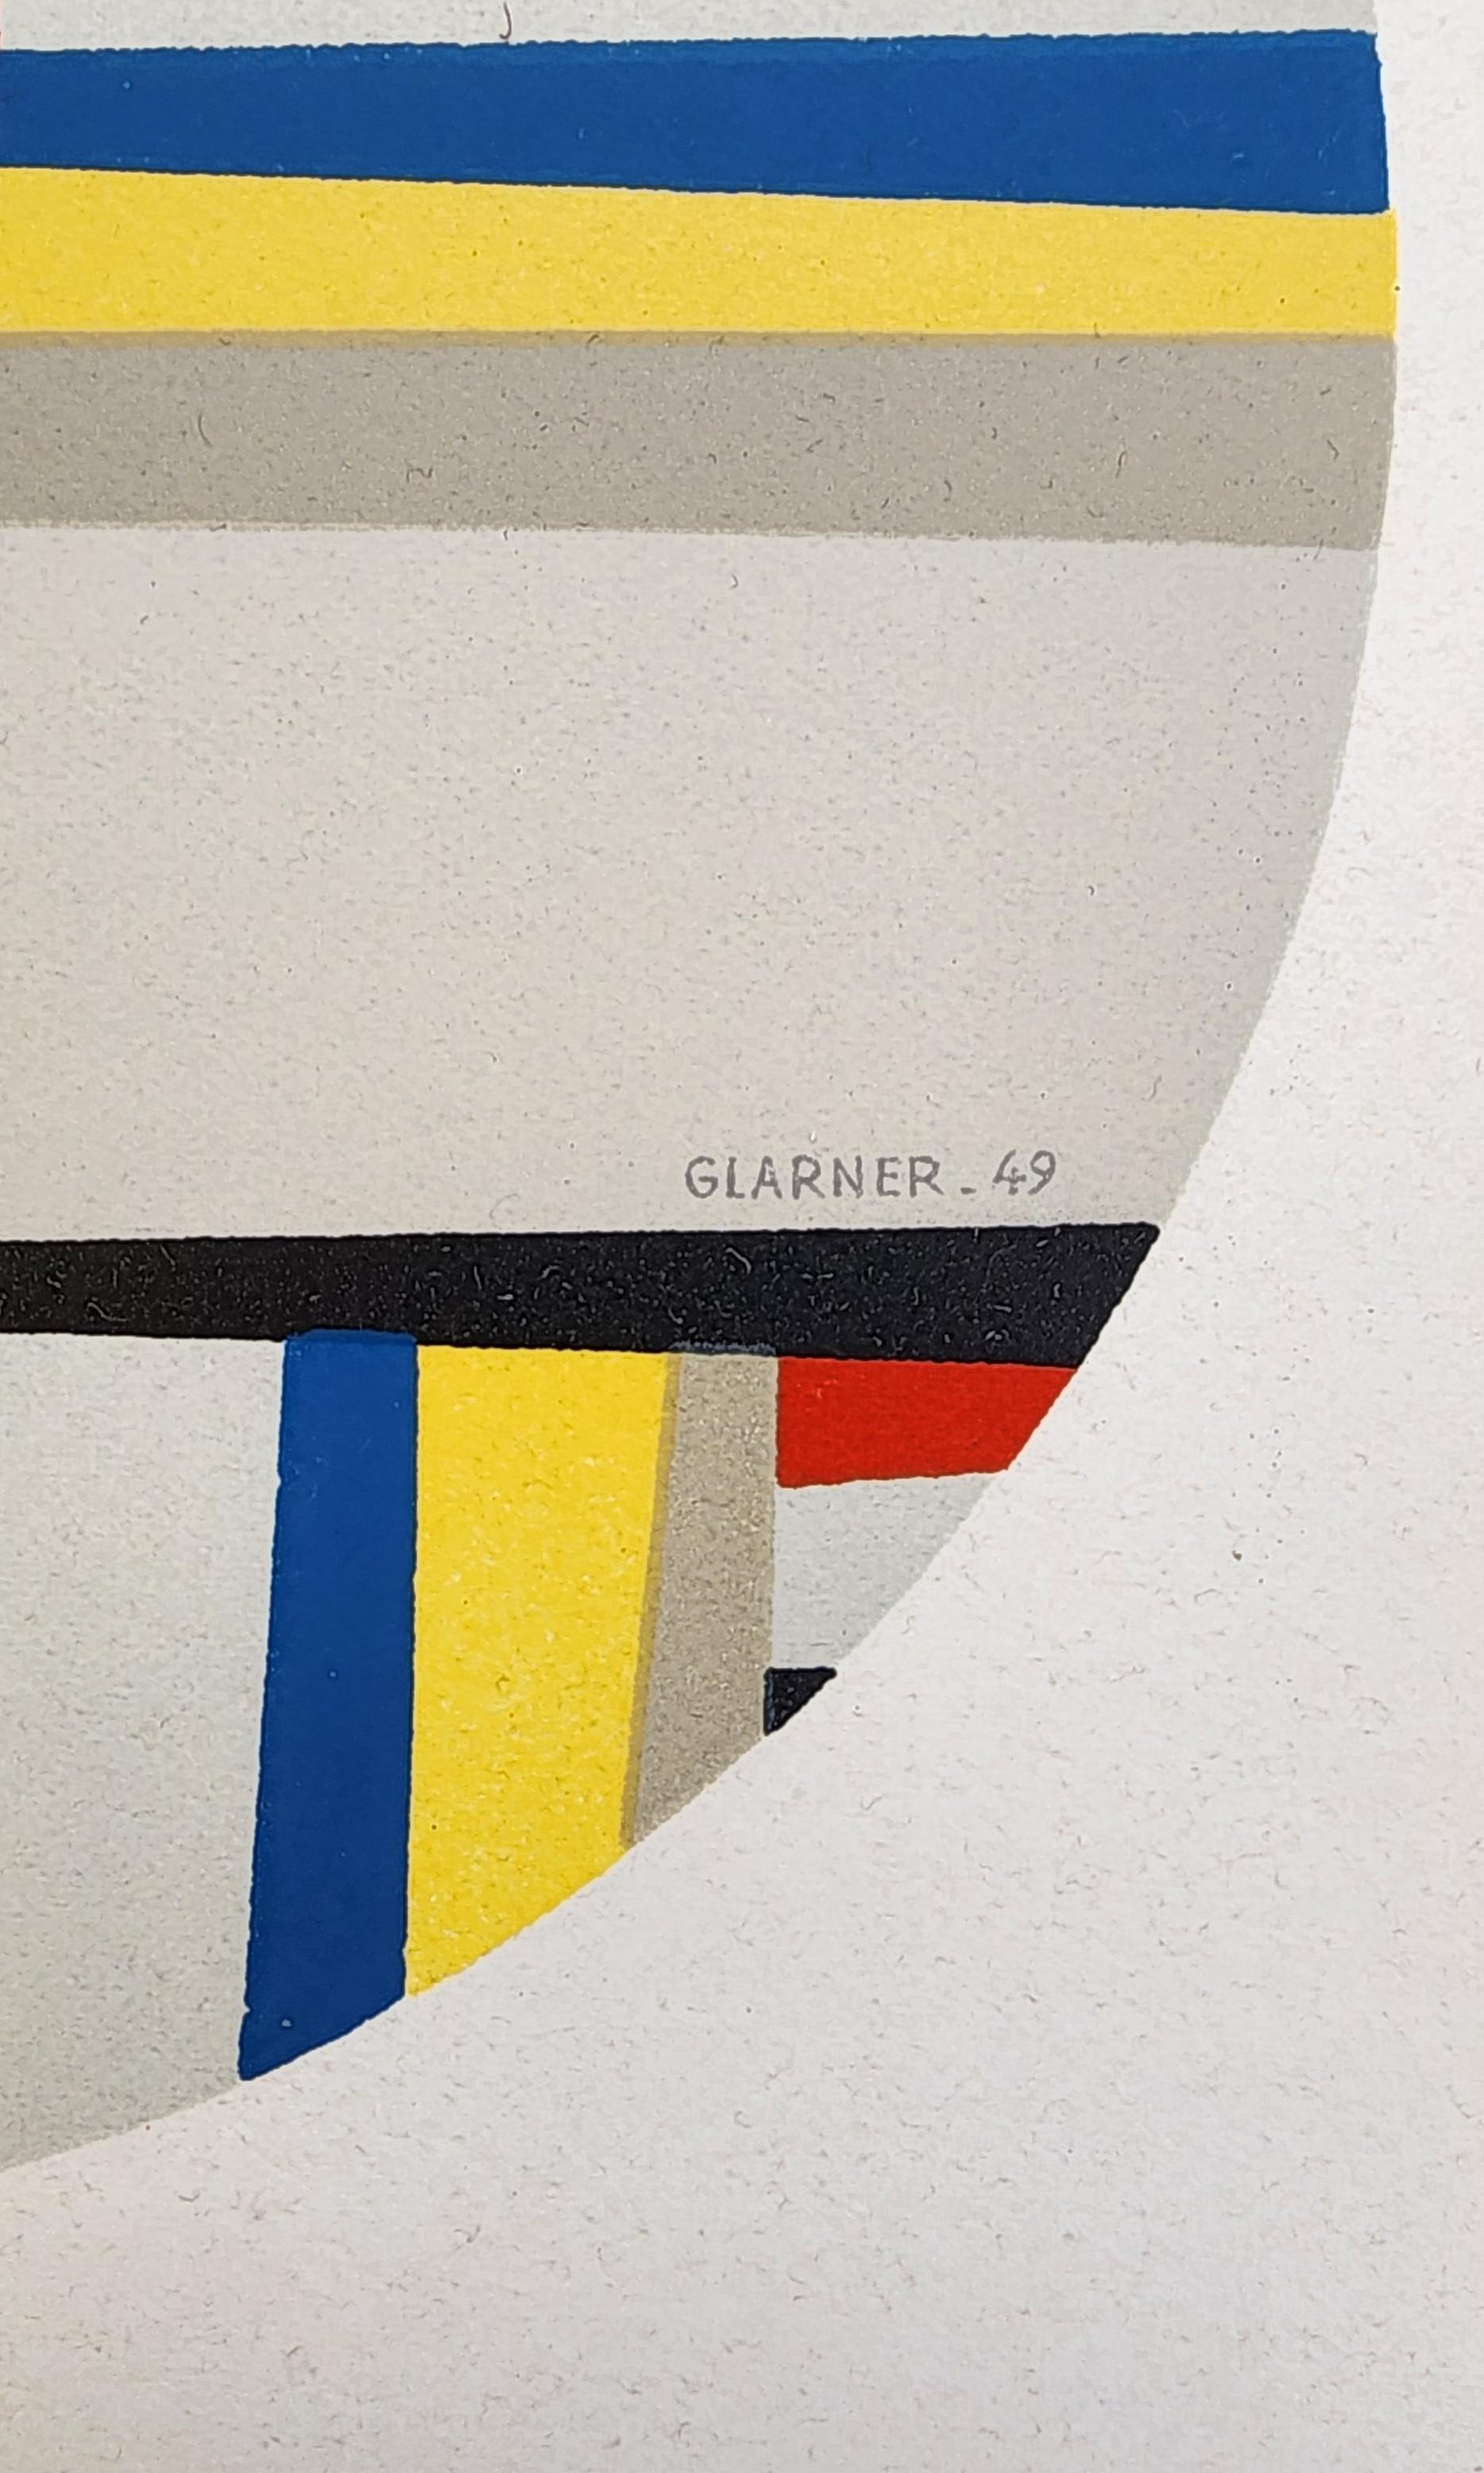 Tondo (Mourlot, Paris, Druck, Design, Modern, ~30% OFF-LIST-Preis, SCHLUSSVERKAUFSVERKAUF) (Geometrische Abstraktion), Print, von Fritz Glarner